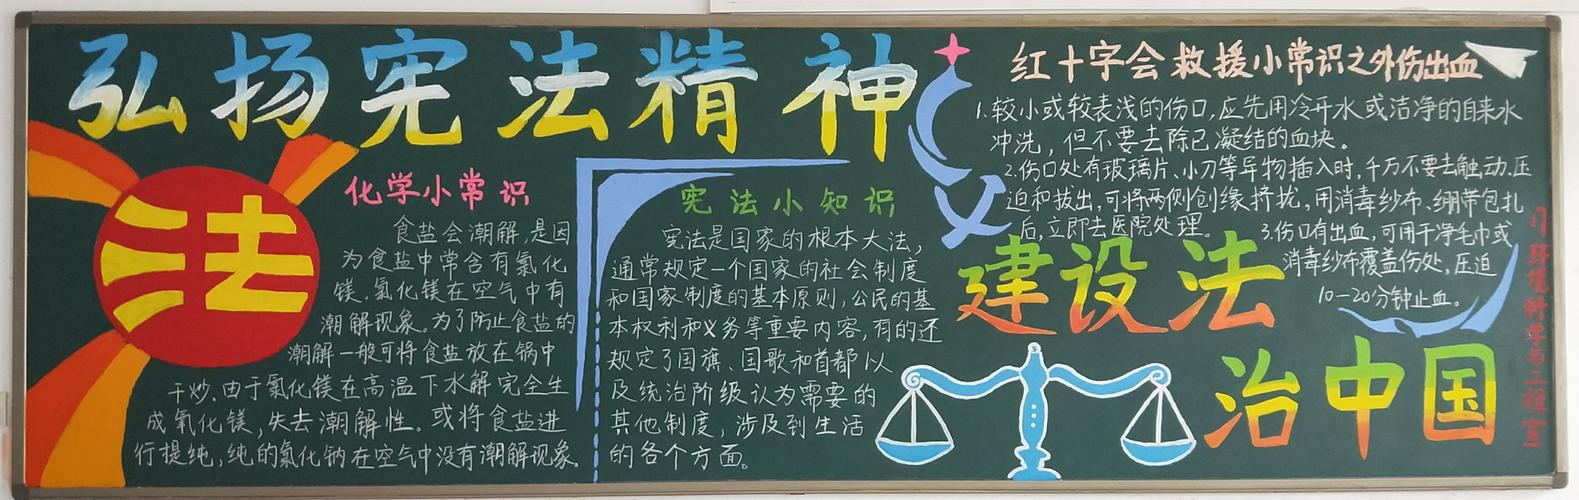 第四期黑板报评比弘扬宪法精神建设法制中国